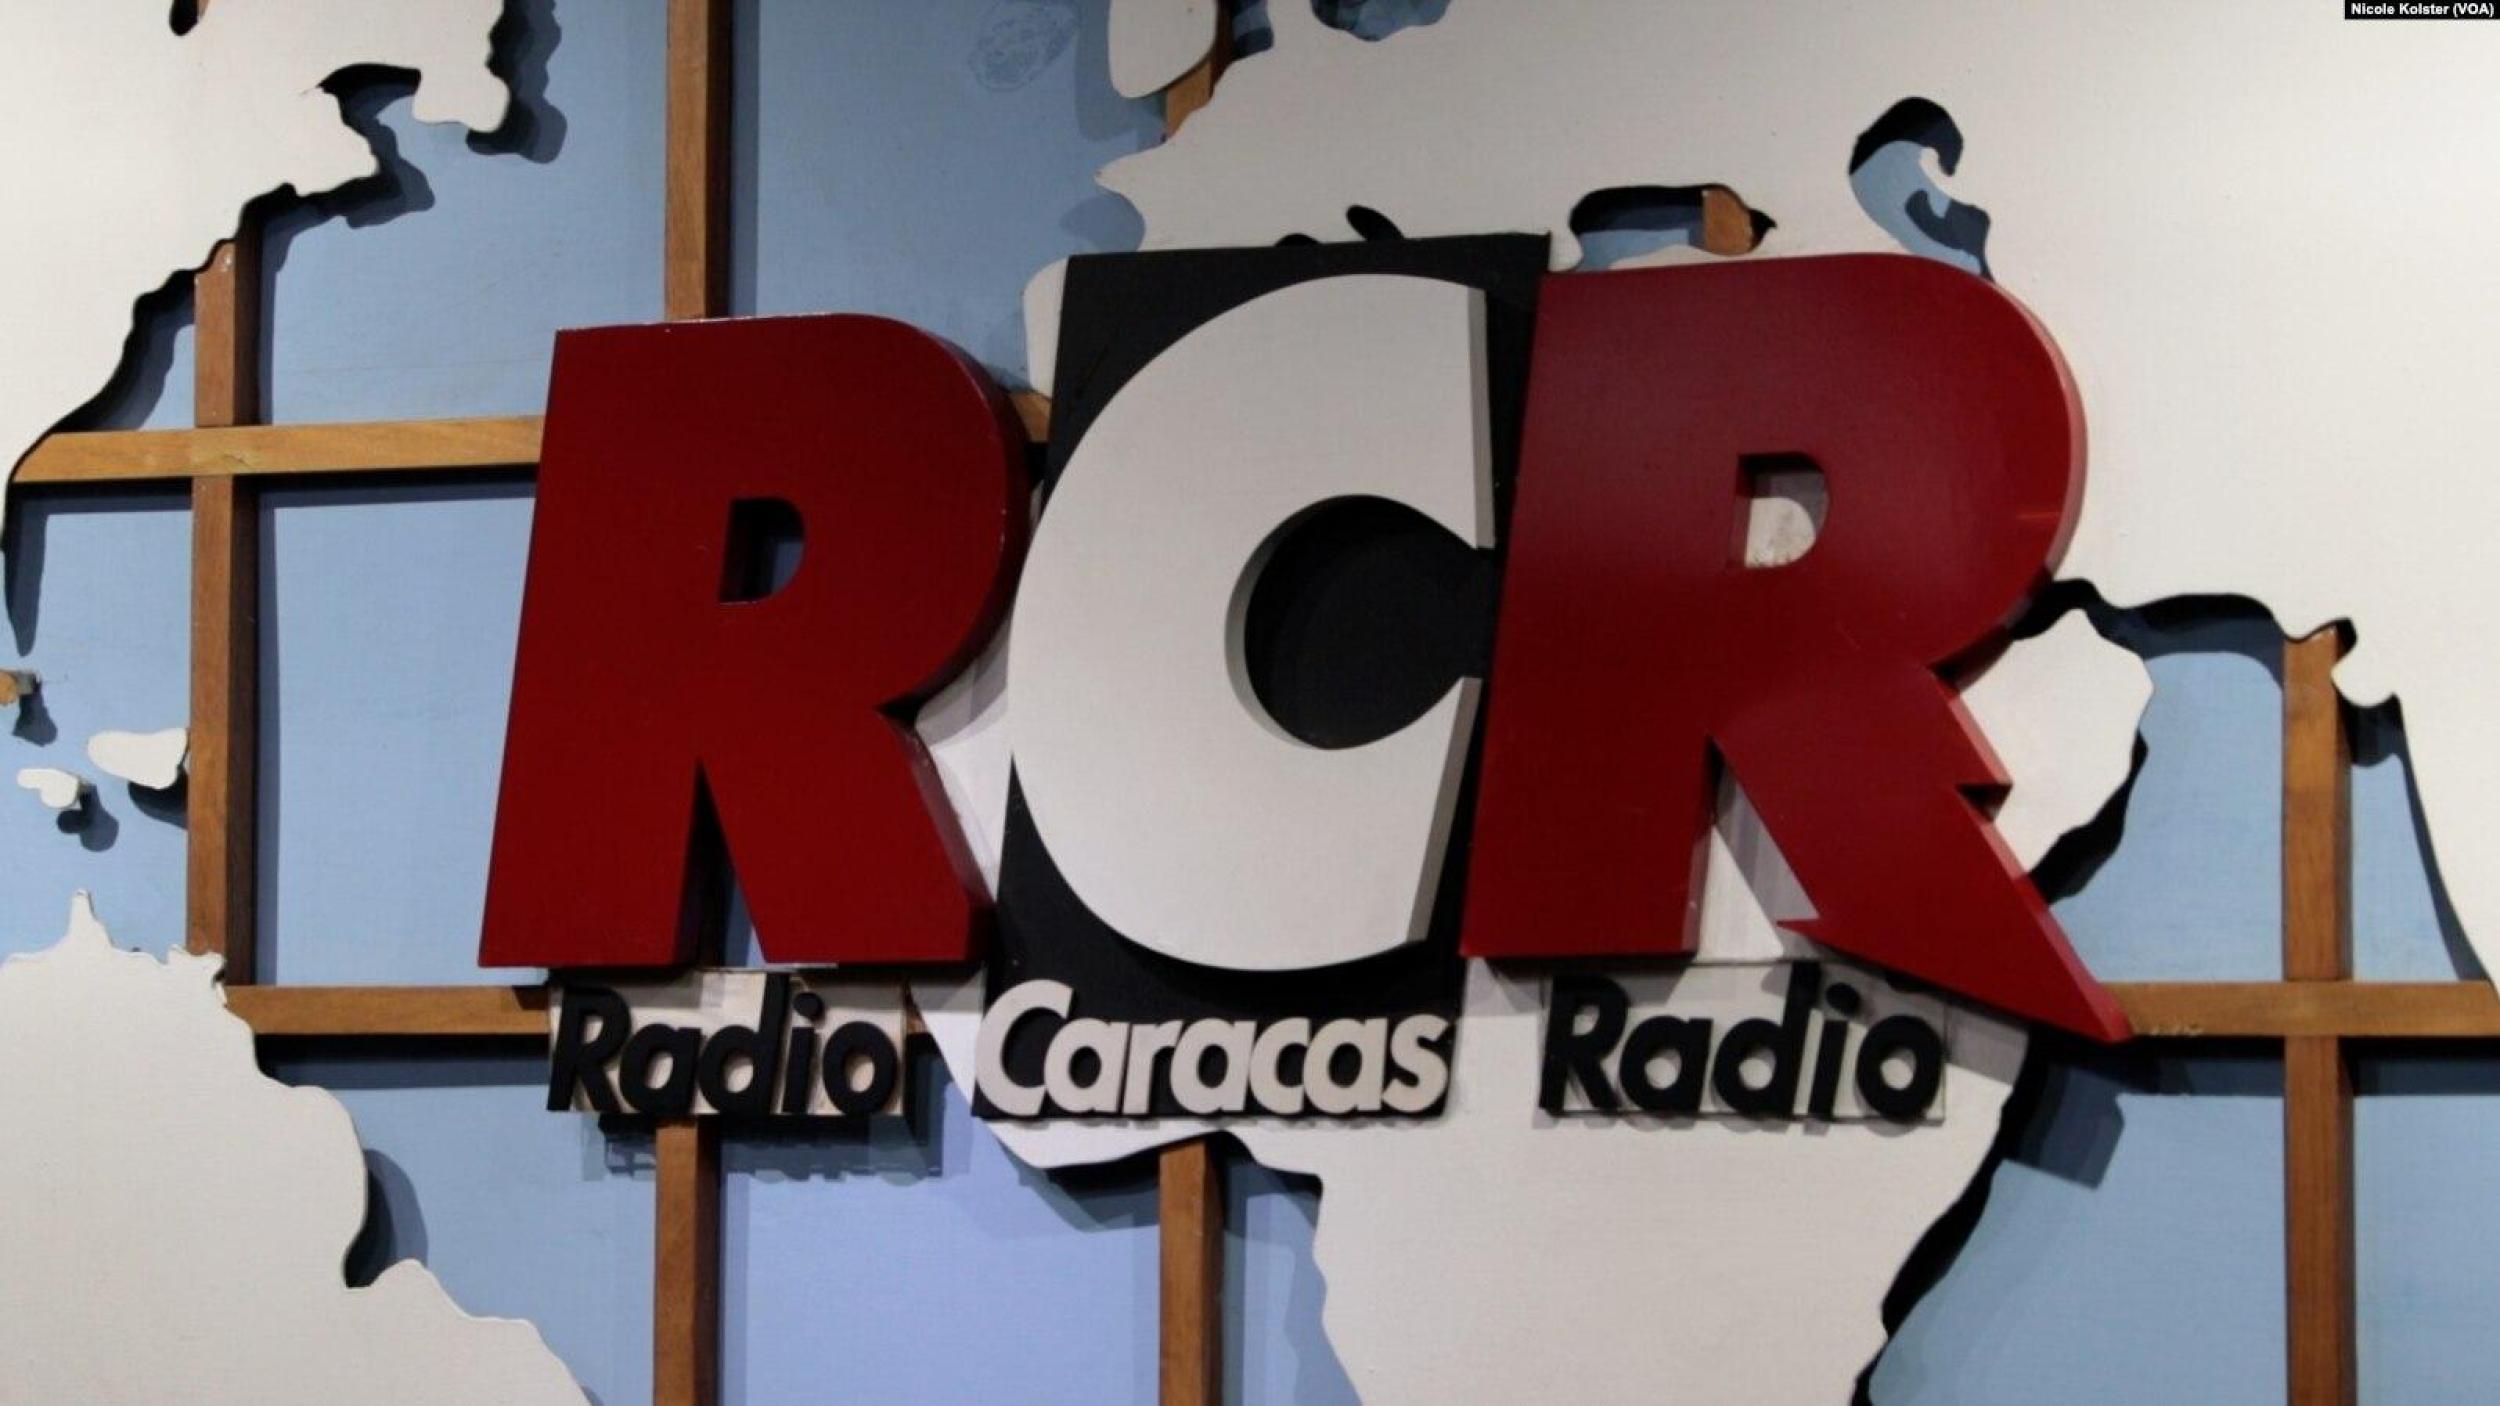 “Es un hasta luego”: Radio Caracas Radio se despide de sus oyentes tras el cese de sus operaciones